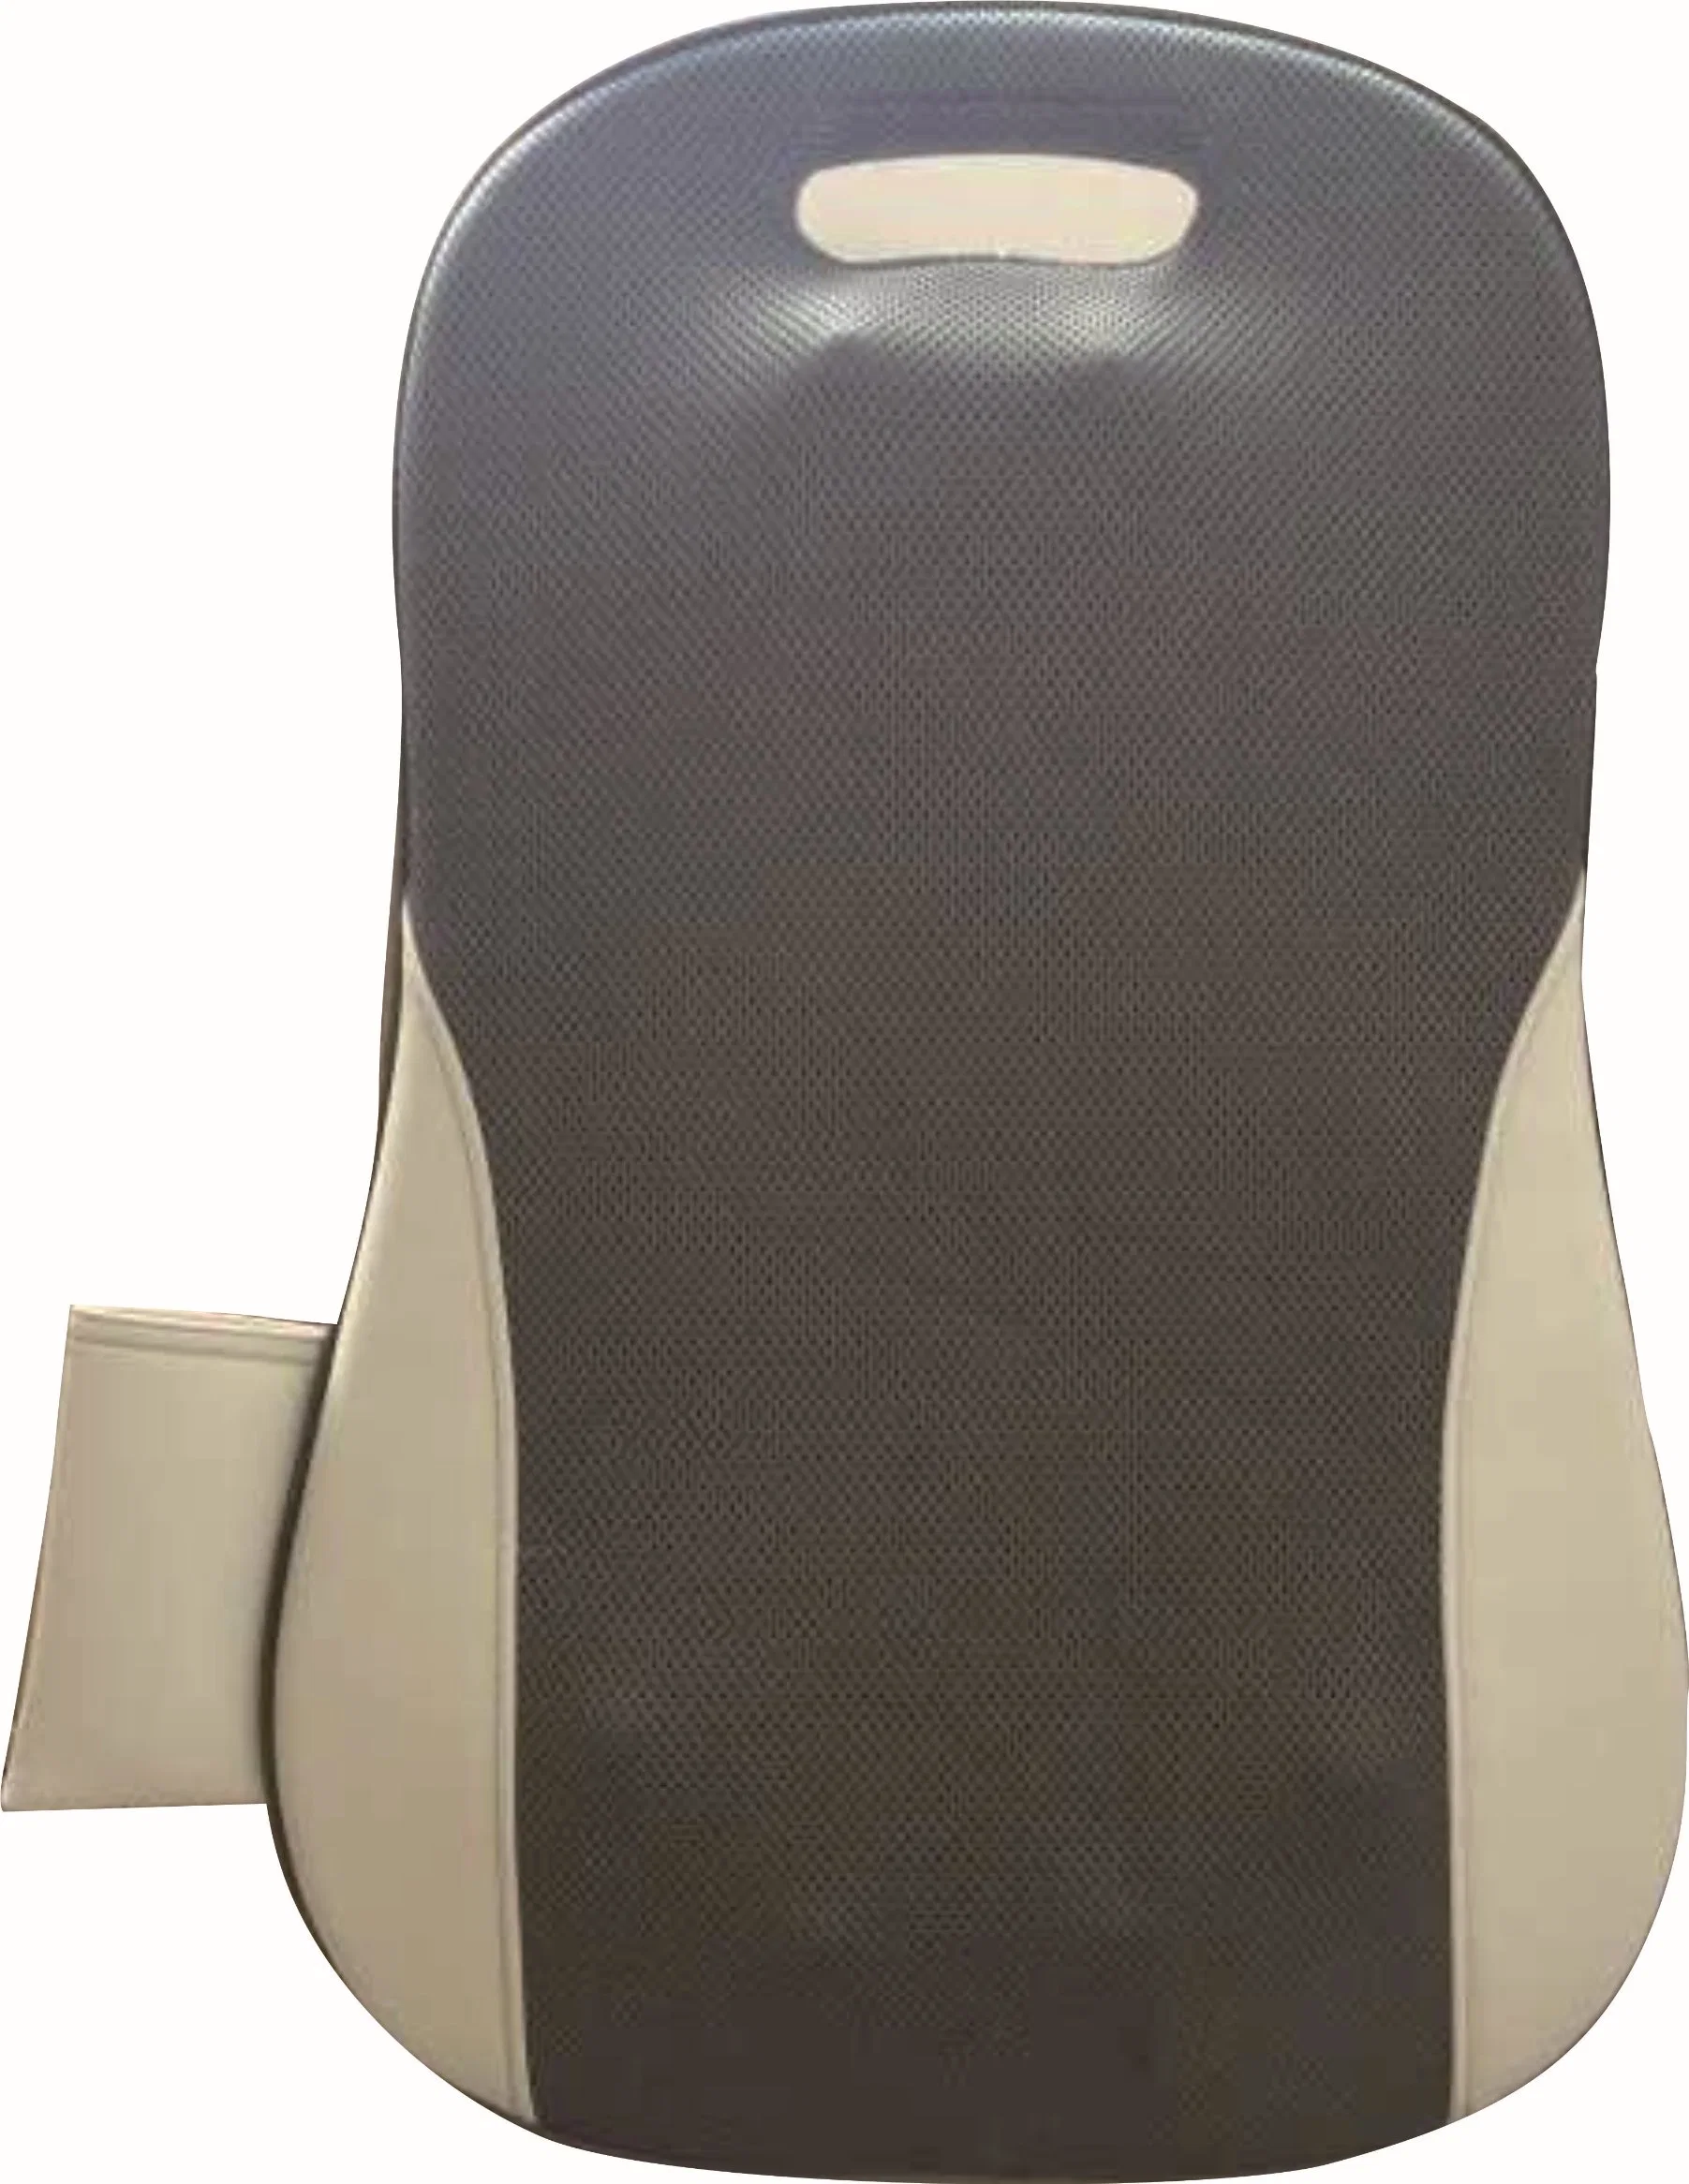 Büro Stuhl Electric Shiatsu Kneten Rücken Taille Unterstützung Tragbare Massage Massagegerät mit Polsterhaken und Fernbedienung